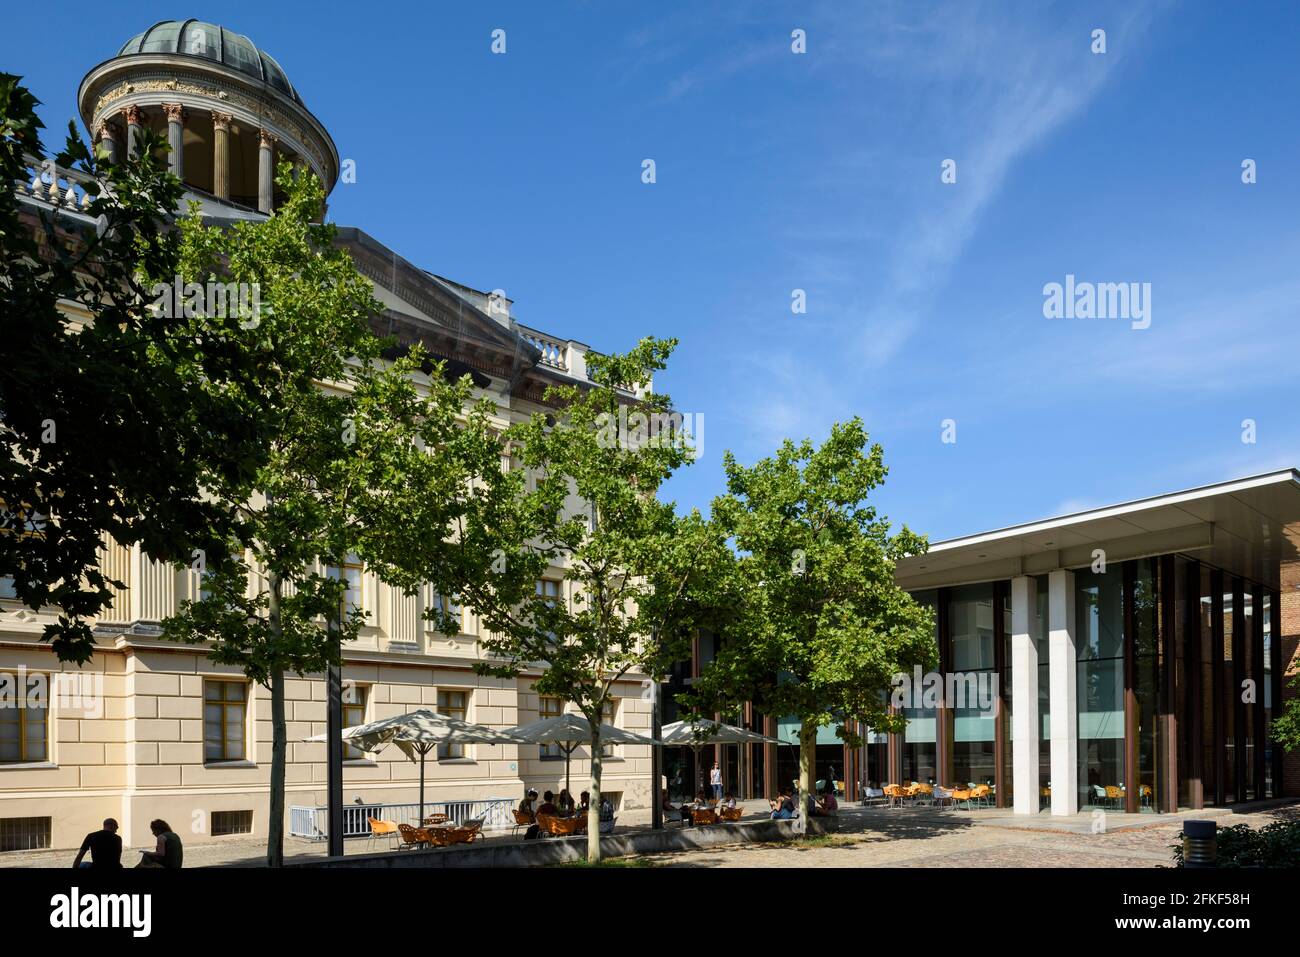 Berlín. Alemania. Colección Scharf-Gerstenberg, ubicada en el edificio East Stüler, Schloßstraße, Charlottenburg. Foto de stock